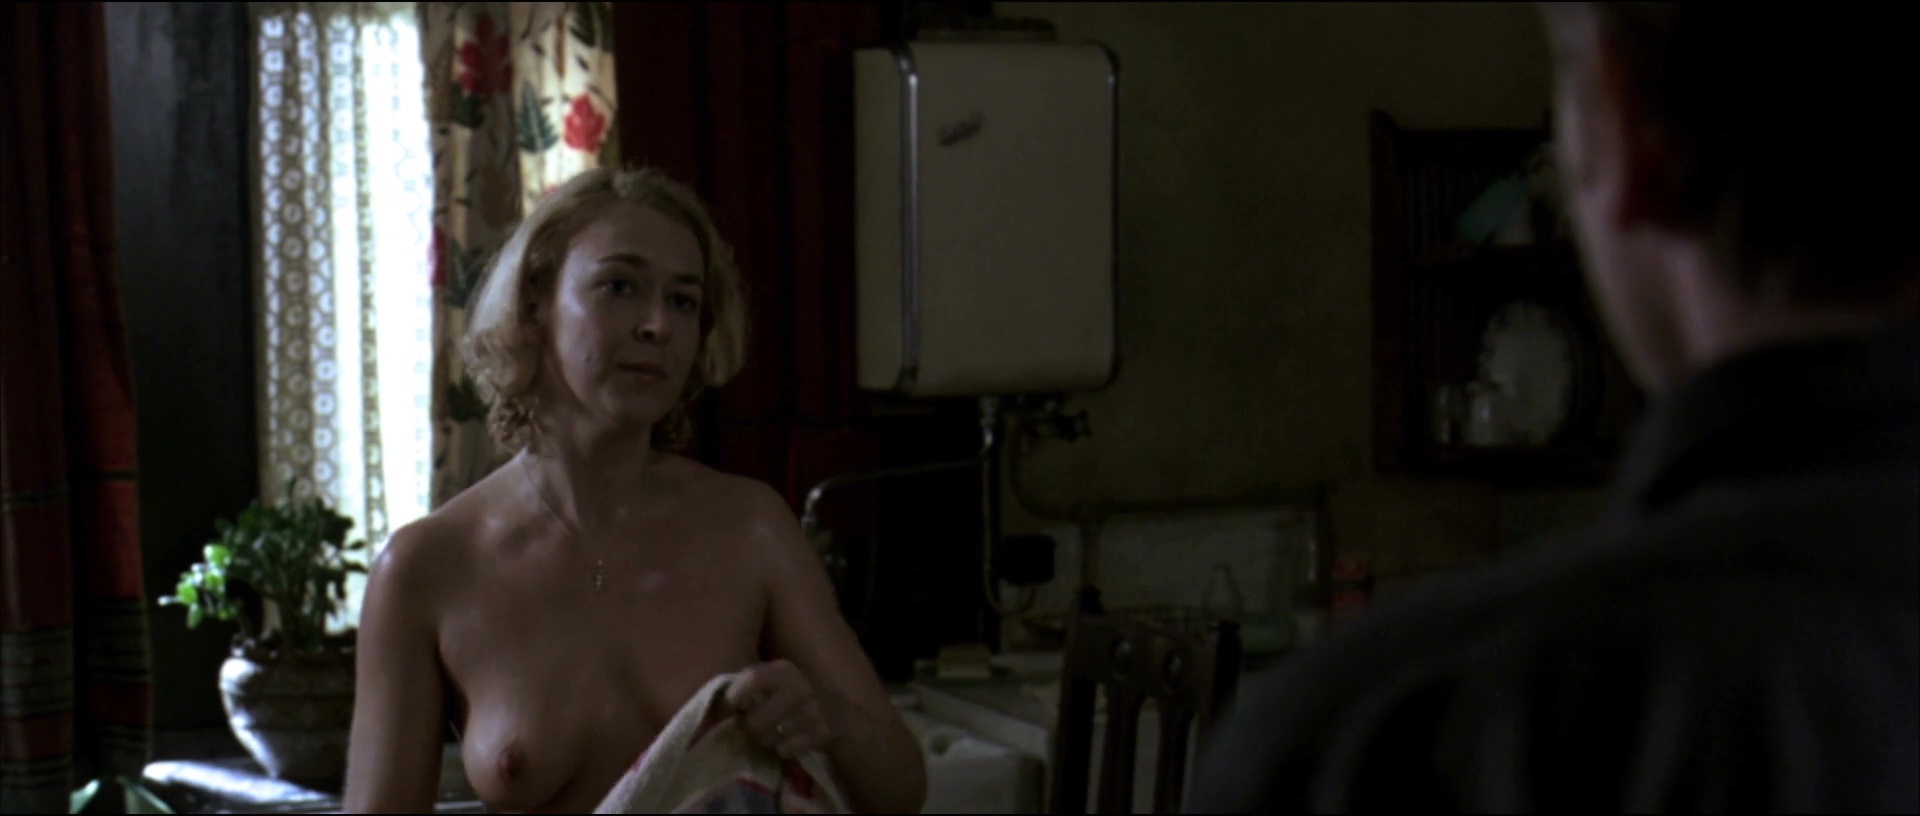 Полин Тернер nude pics.